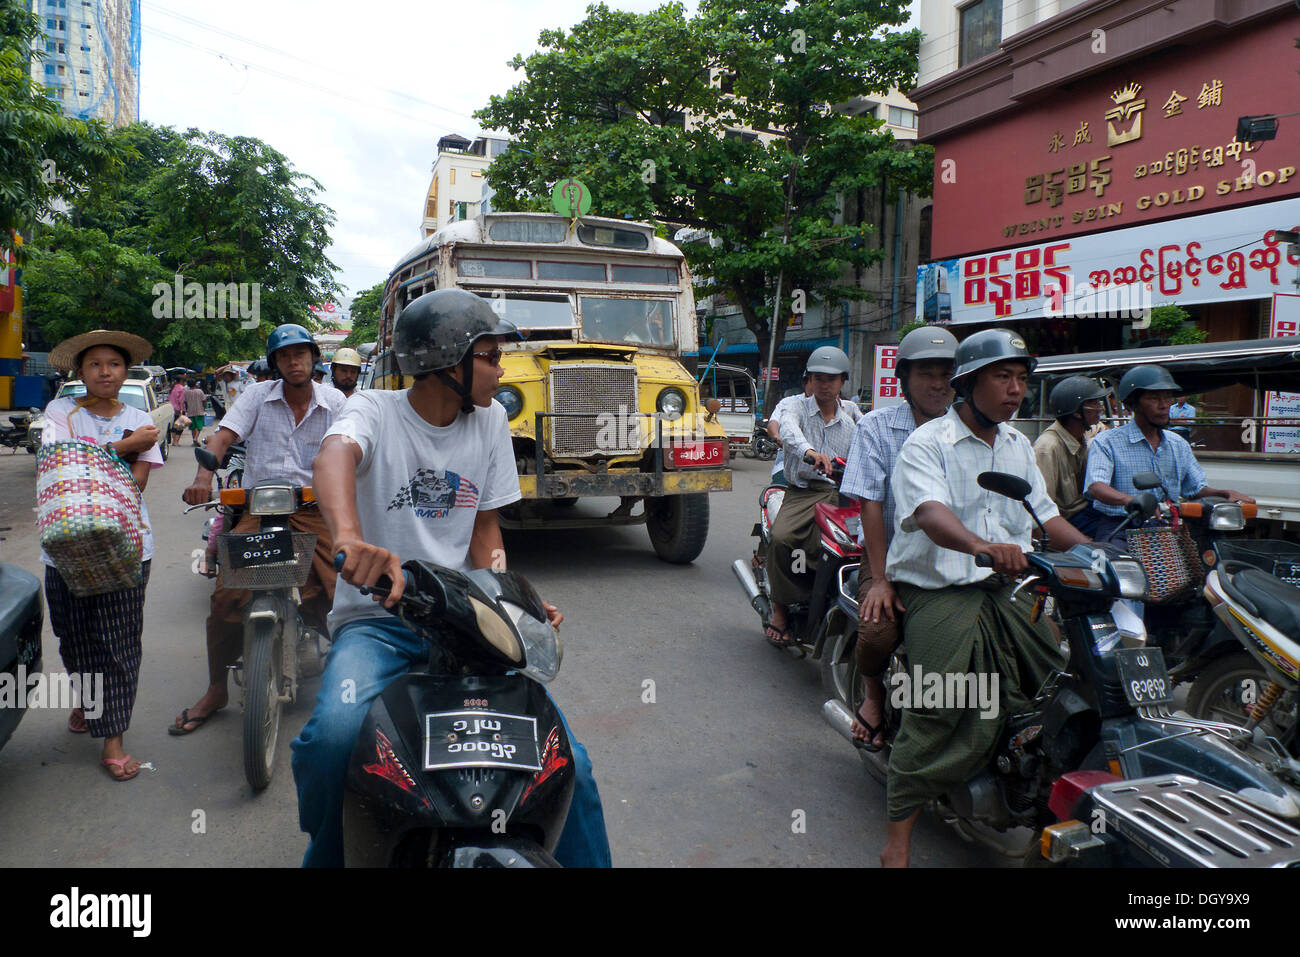 Scena di strada, birmani gli uomini a cavallo ciclomotori o scooter, pedoni, vecchio bus birmano sulla strada per il mercato a Mandalay, Birmania Foto Stock